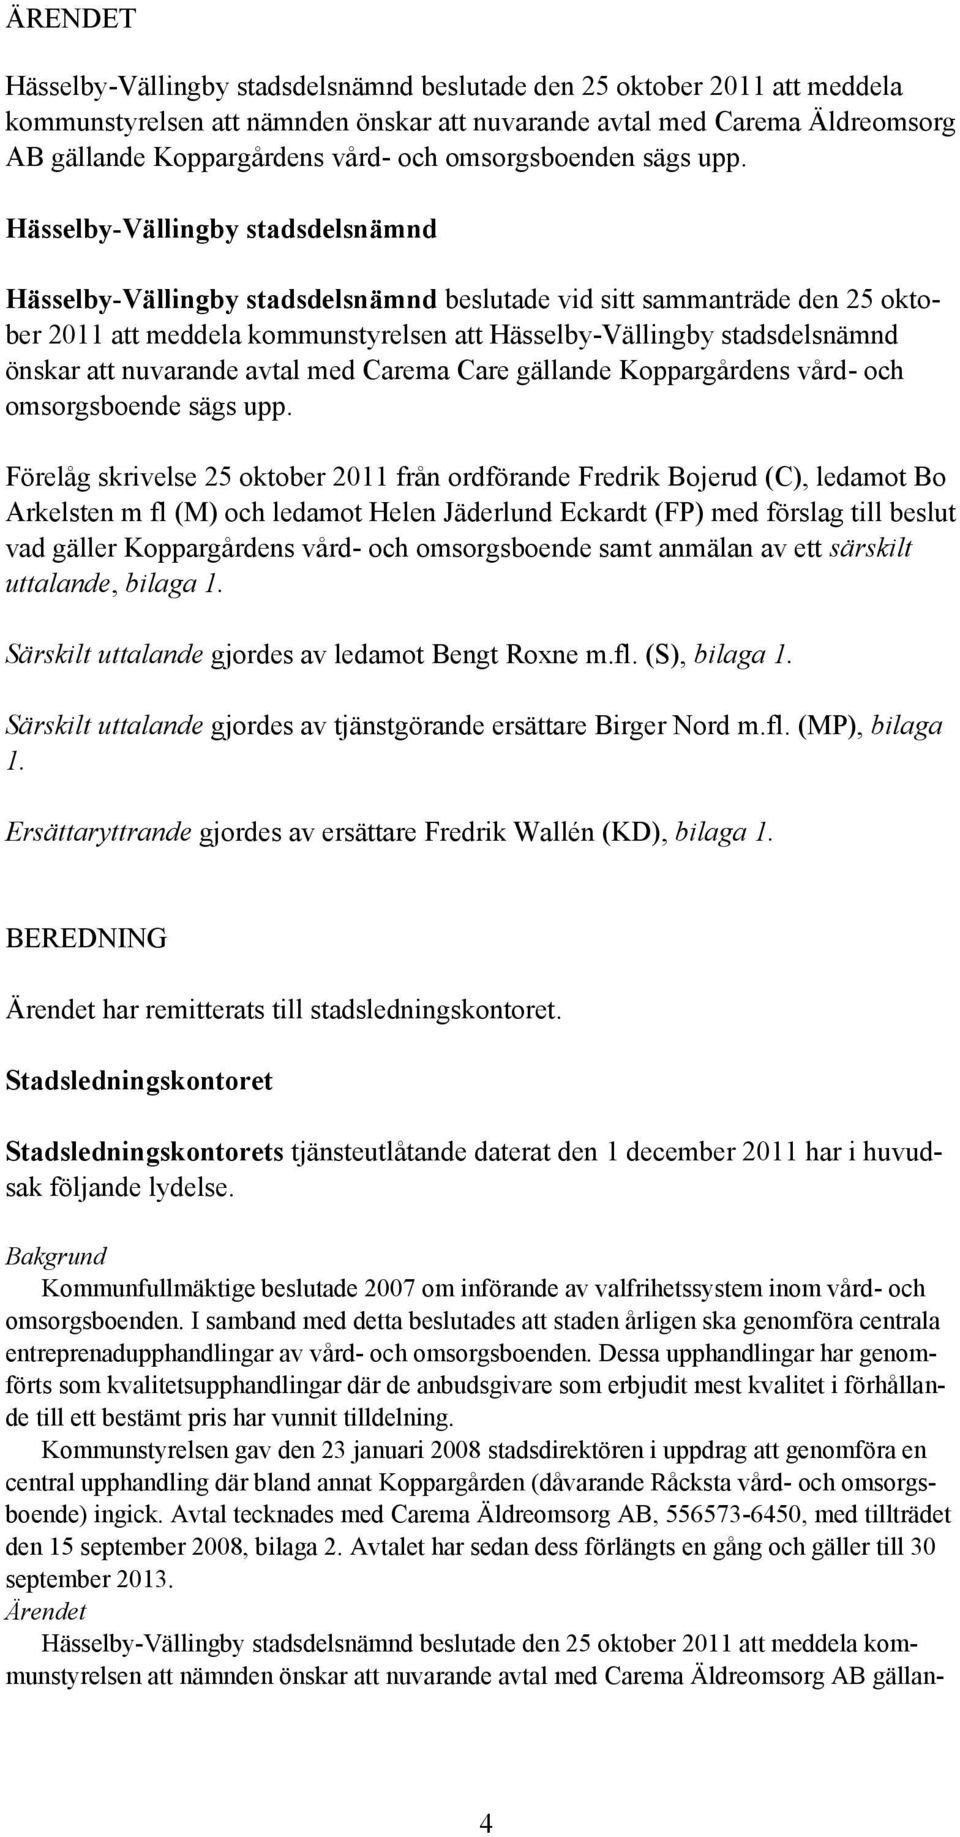 Hässelby-Vällingby stadsdelsnämnd Hässelby-Vällingby stadsdelsnämnd beslutade vid sitt sammanträde den 25 oktober 2011 att meddela kommunstyrelsen att Hässelby-Vällingby stadsdelsnämnd önskar att